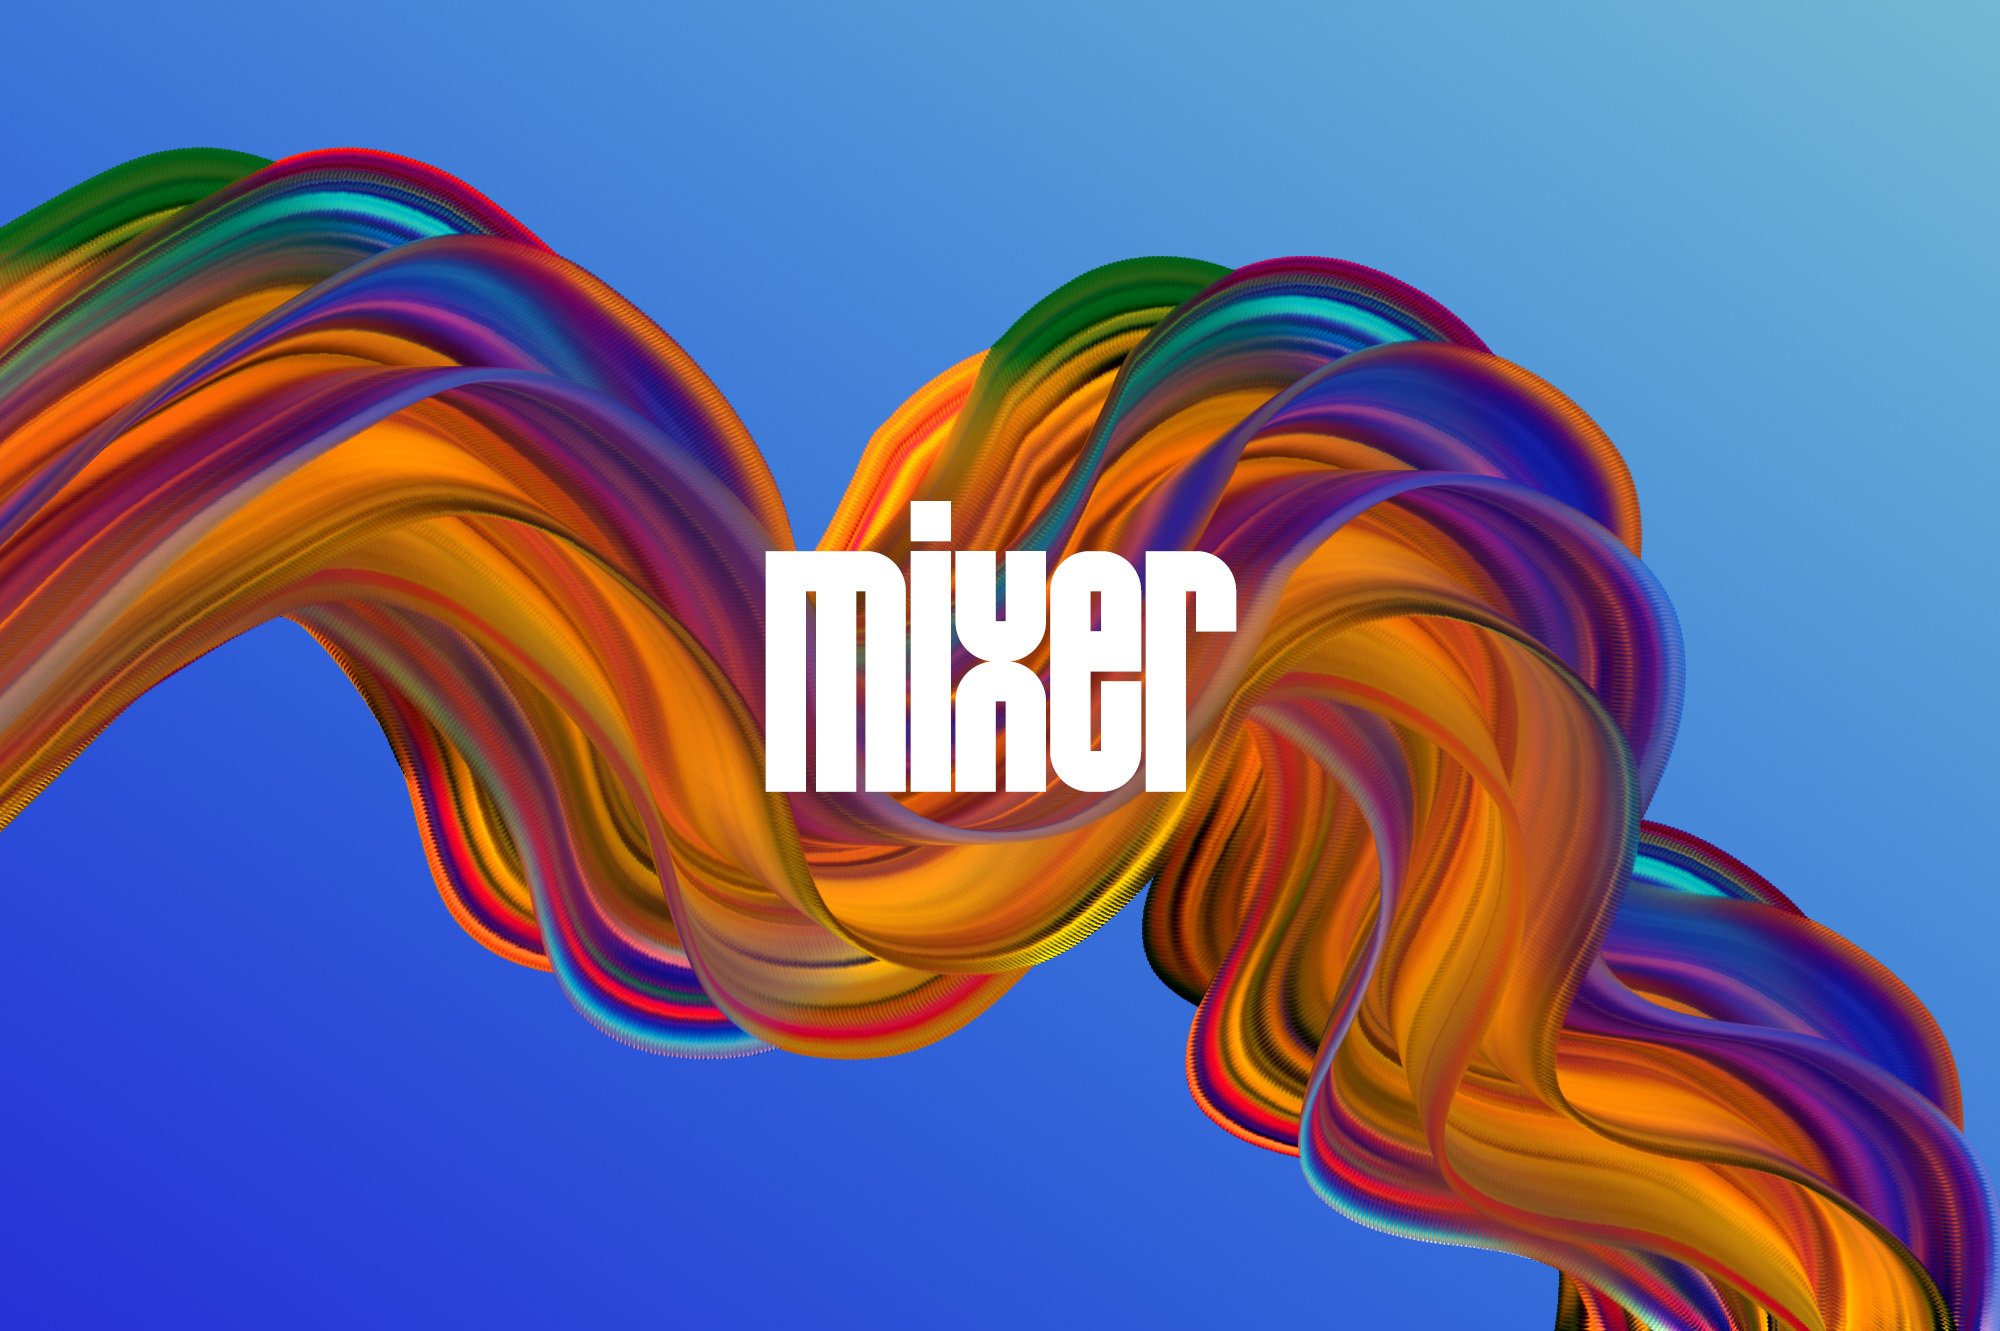 16 mixer preview example 05 795